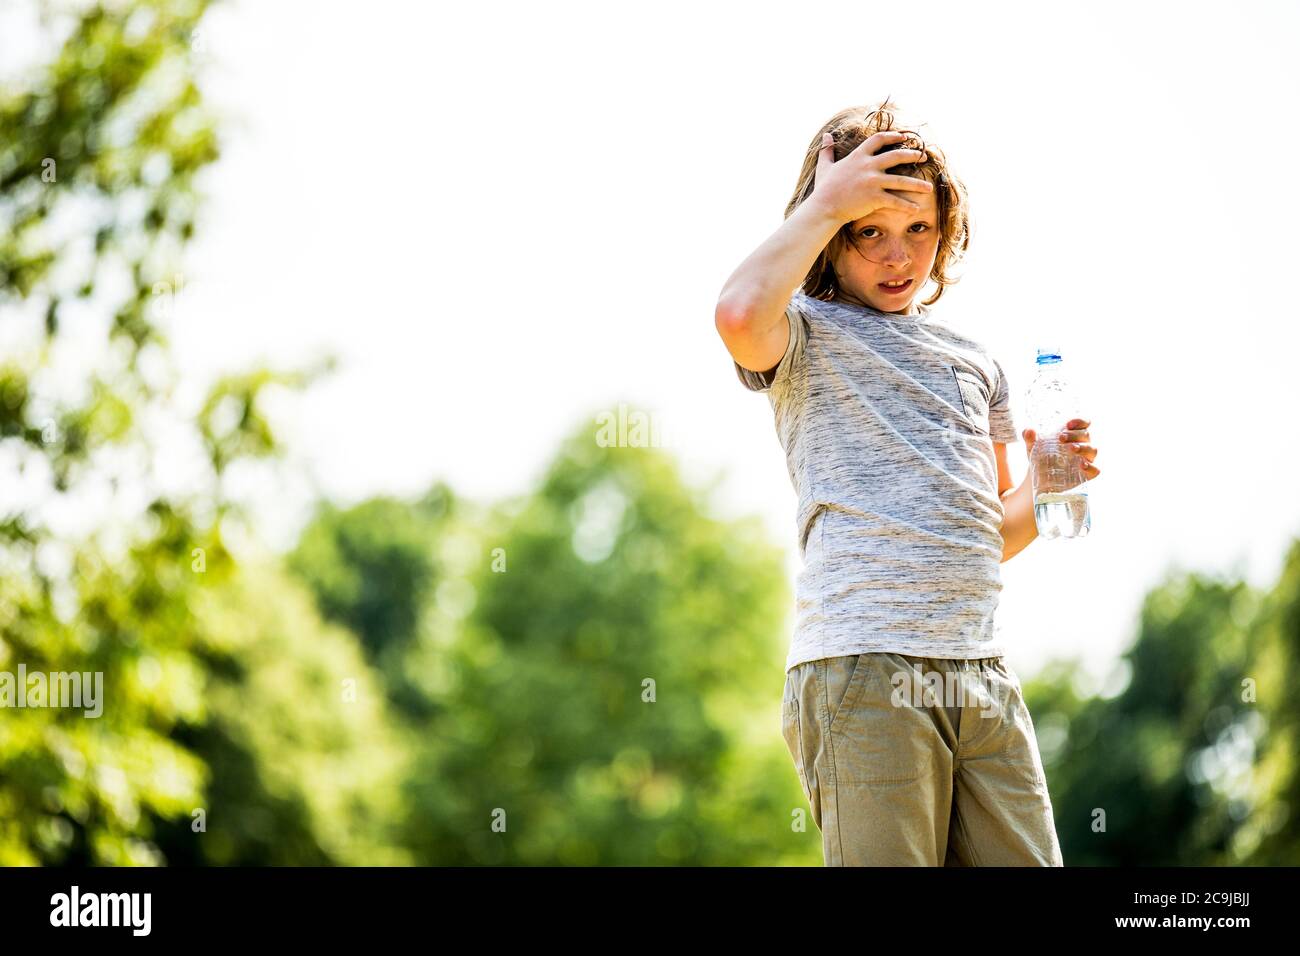 Junge hält Wasserflasche im Park, Porträt. Stockfoto